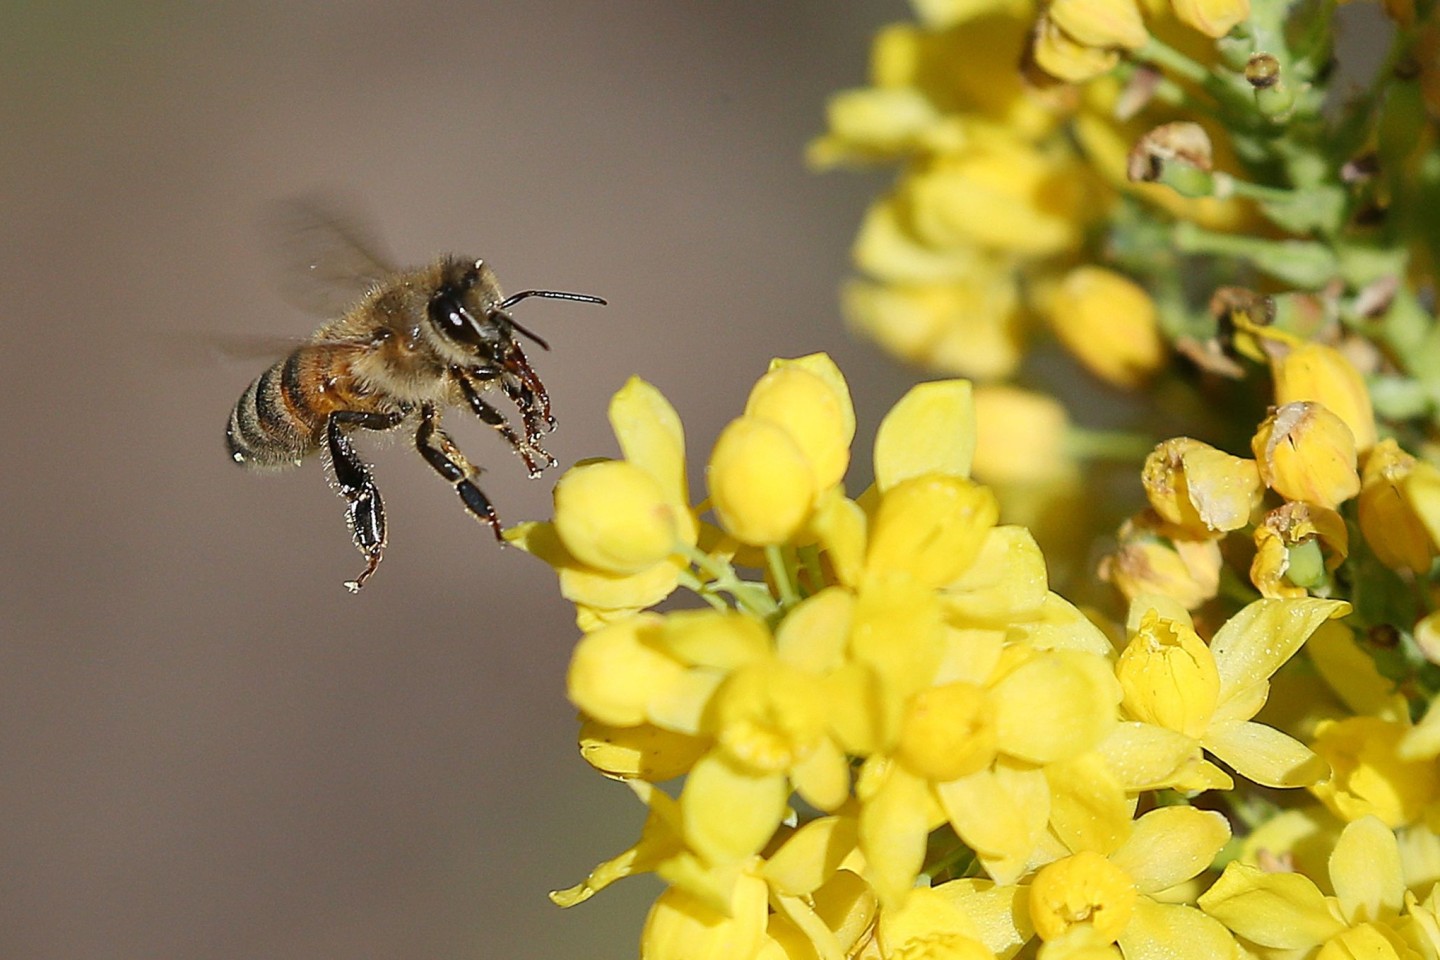 Studien zufolge schädigen Neonikotinoide Wild- und Honigbienen erheblich.